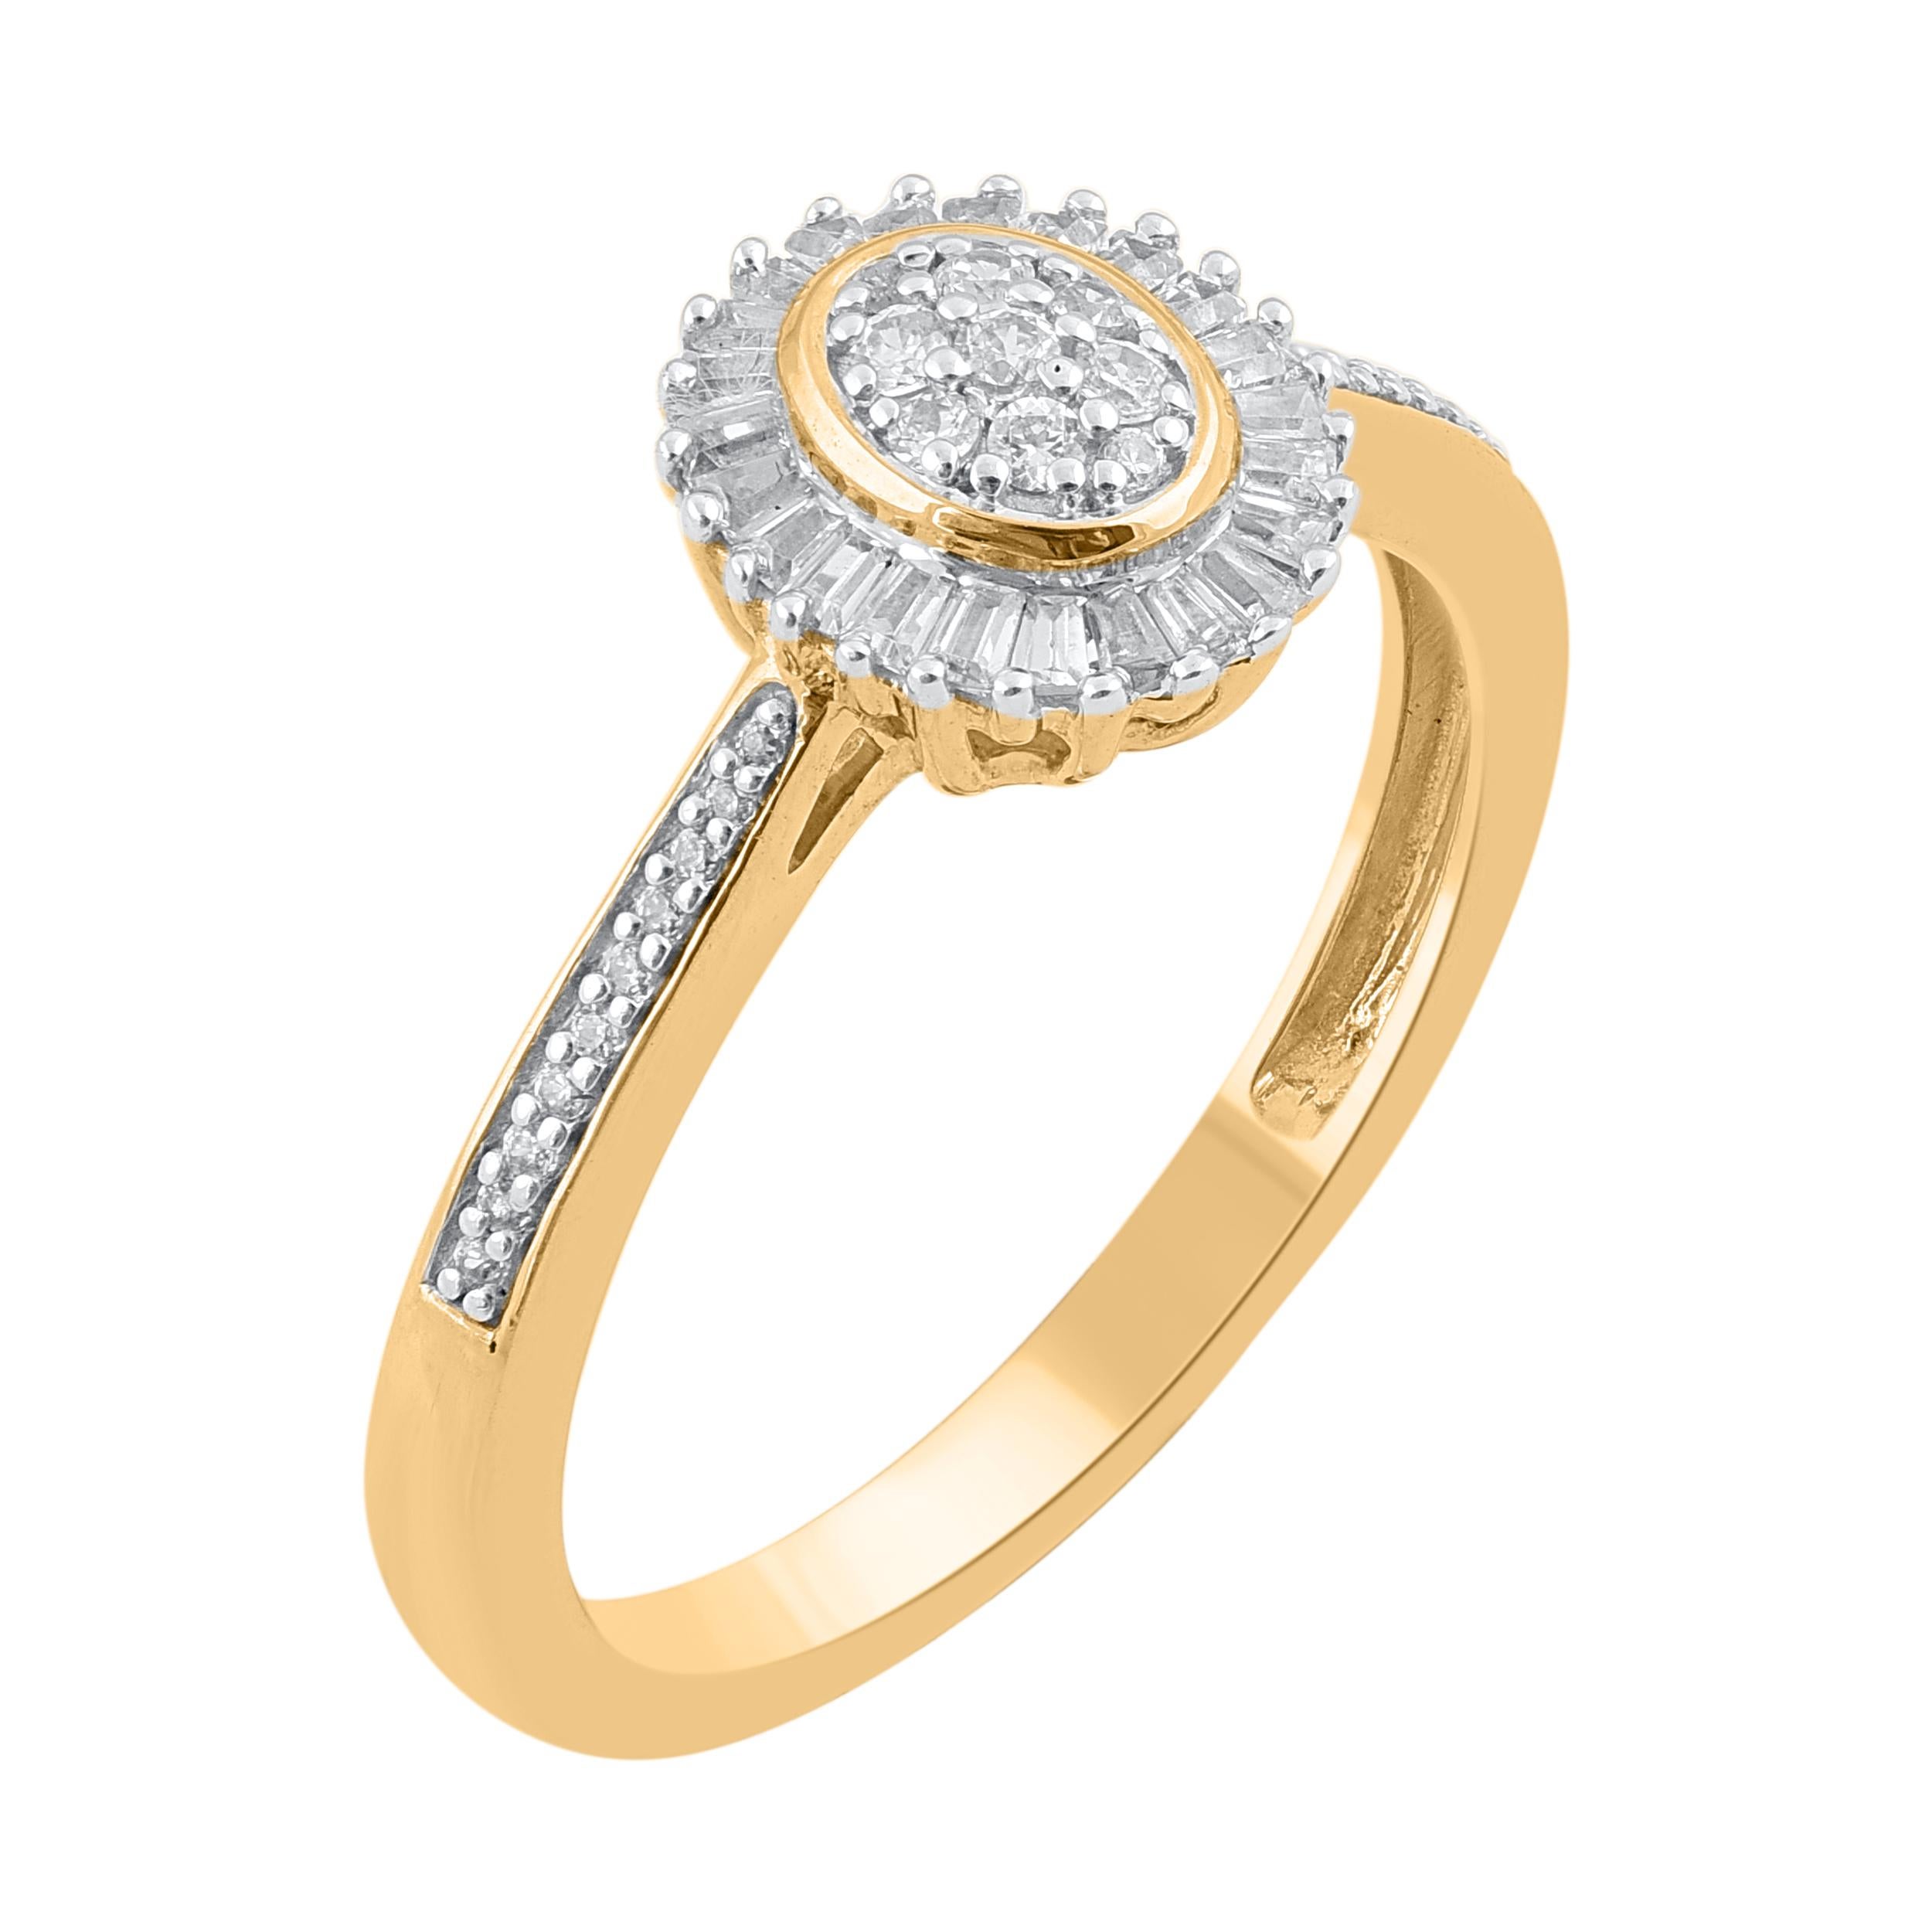 Verleihen Sie diesem diamantenen Verlobungsring einen Hauch von Eleganz. Dieser Ring ist wunderschön aus 14 Karat Gelbgold gefertigt und mit 53 Diamanten im Einzel-, Brillant- und Baguetteschliff in Pflaster- und Kanalfassung besetzt. Das